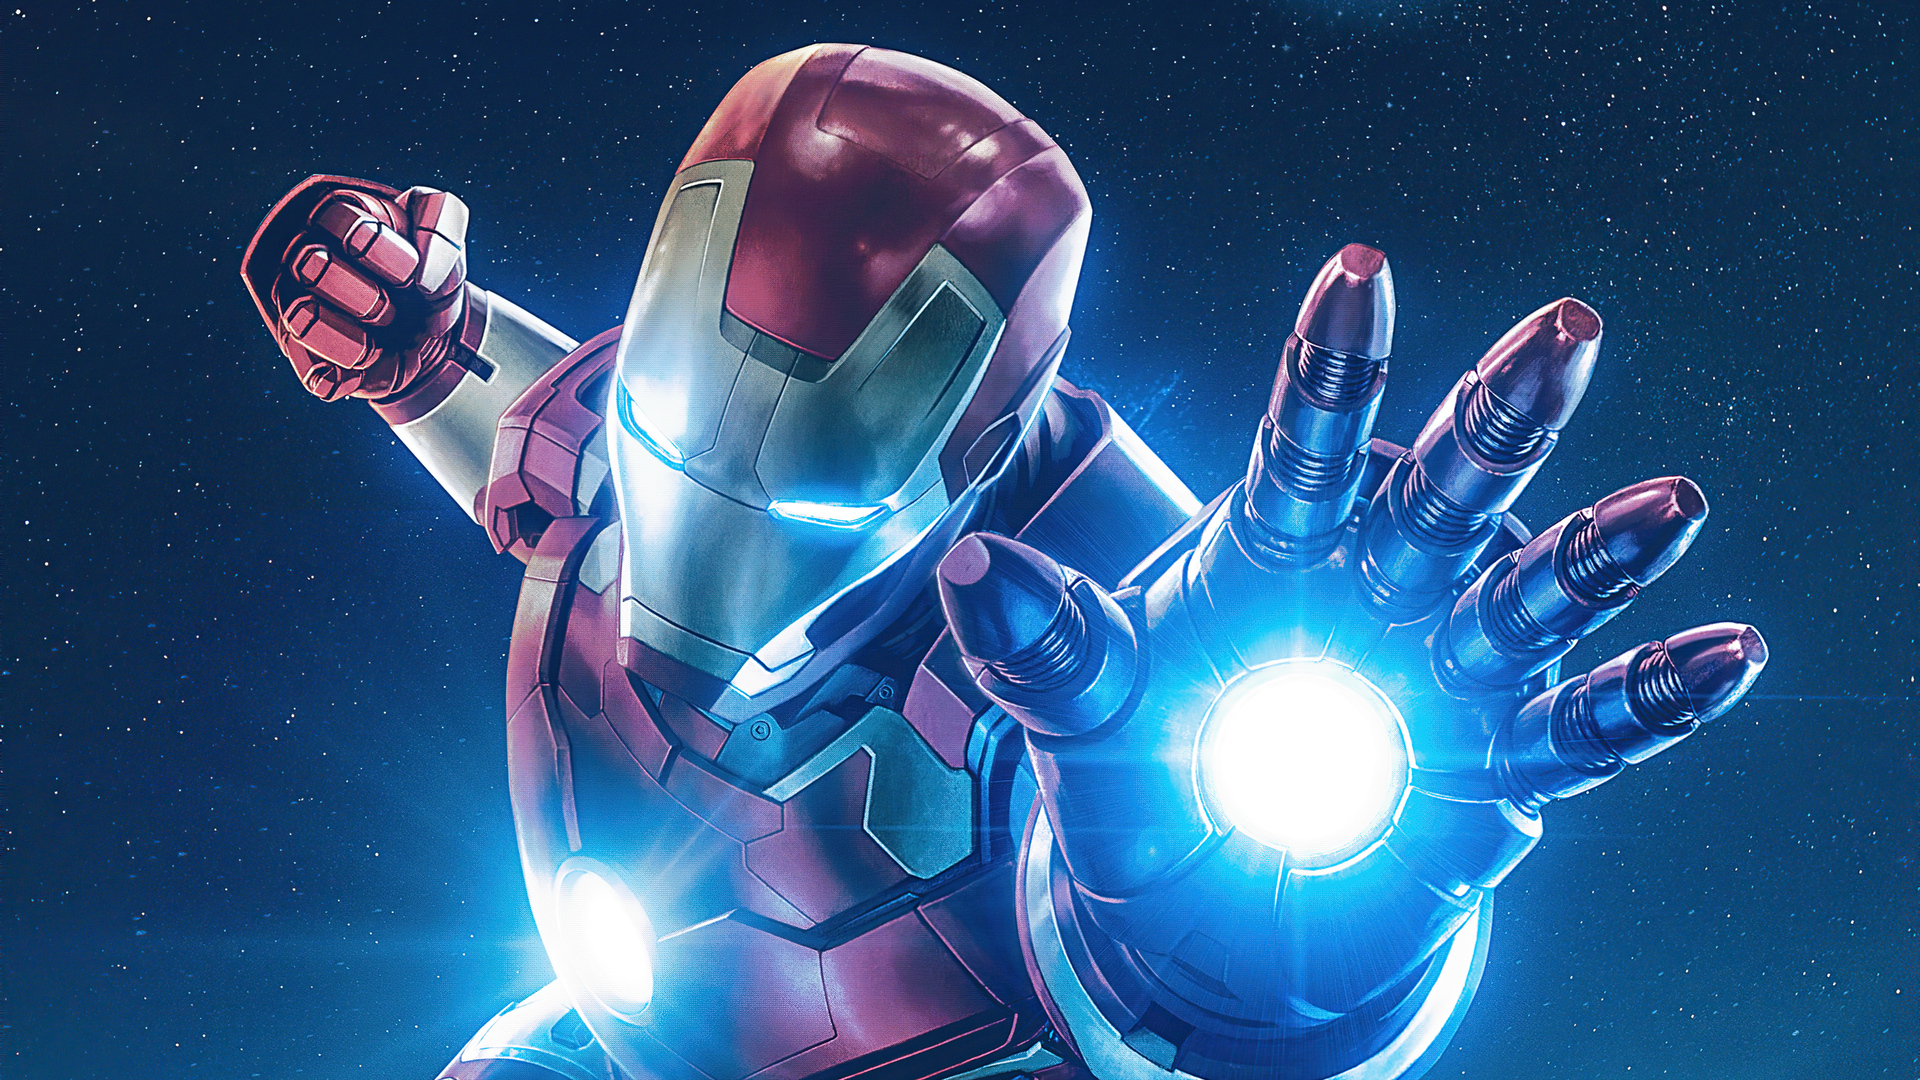 Tổng hợp Wallpaper 3D Iron Man đỉnh cao công nghệ, tải miễn phí